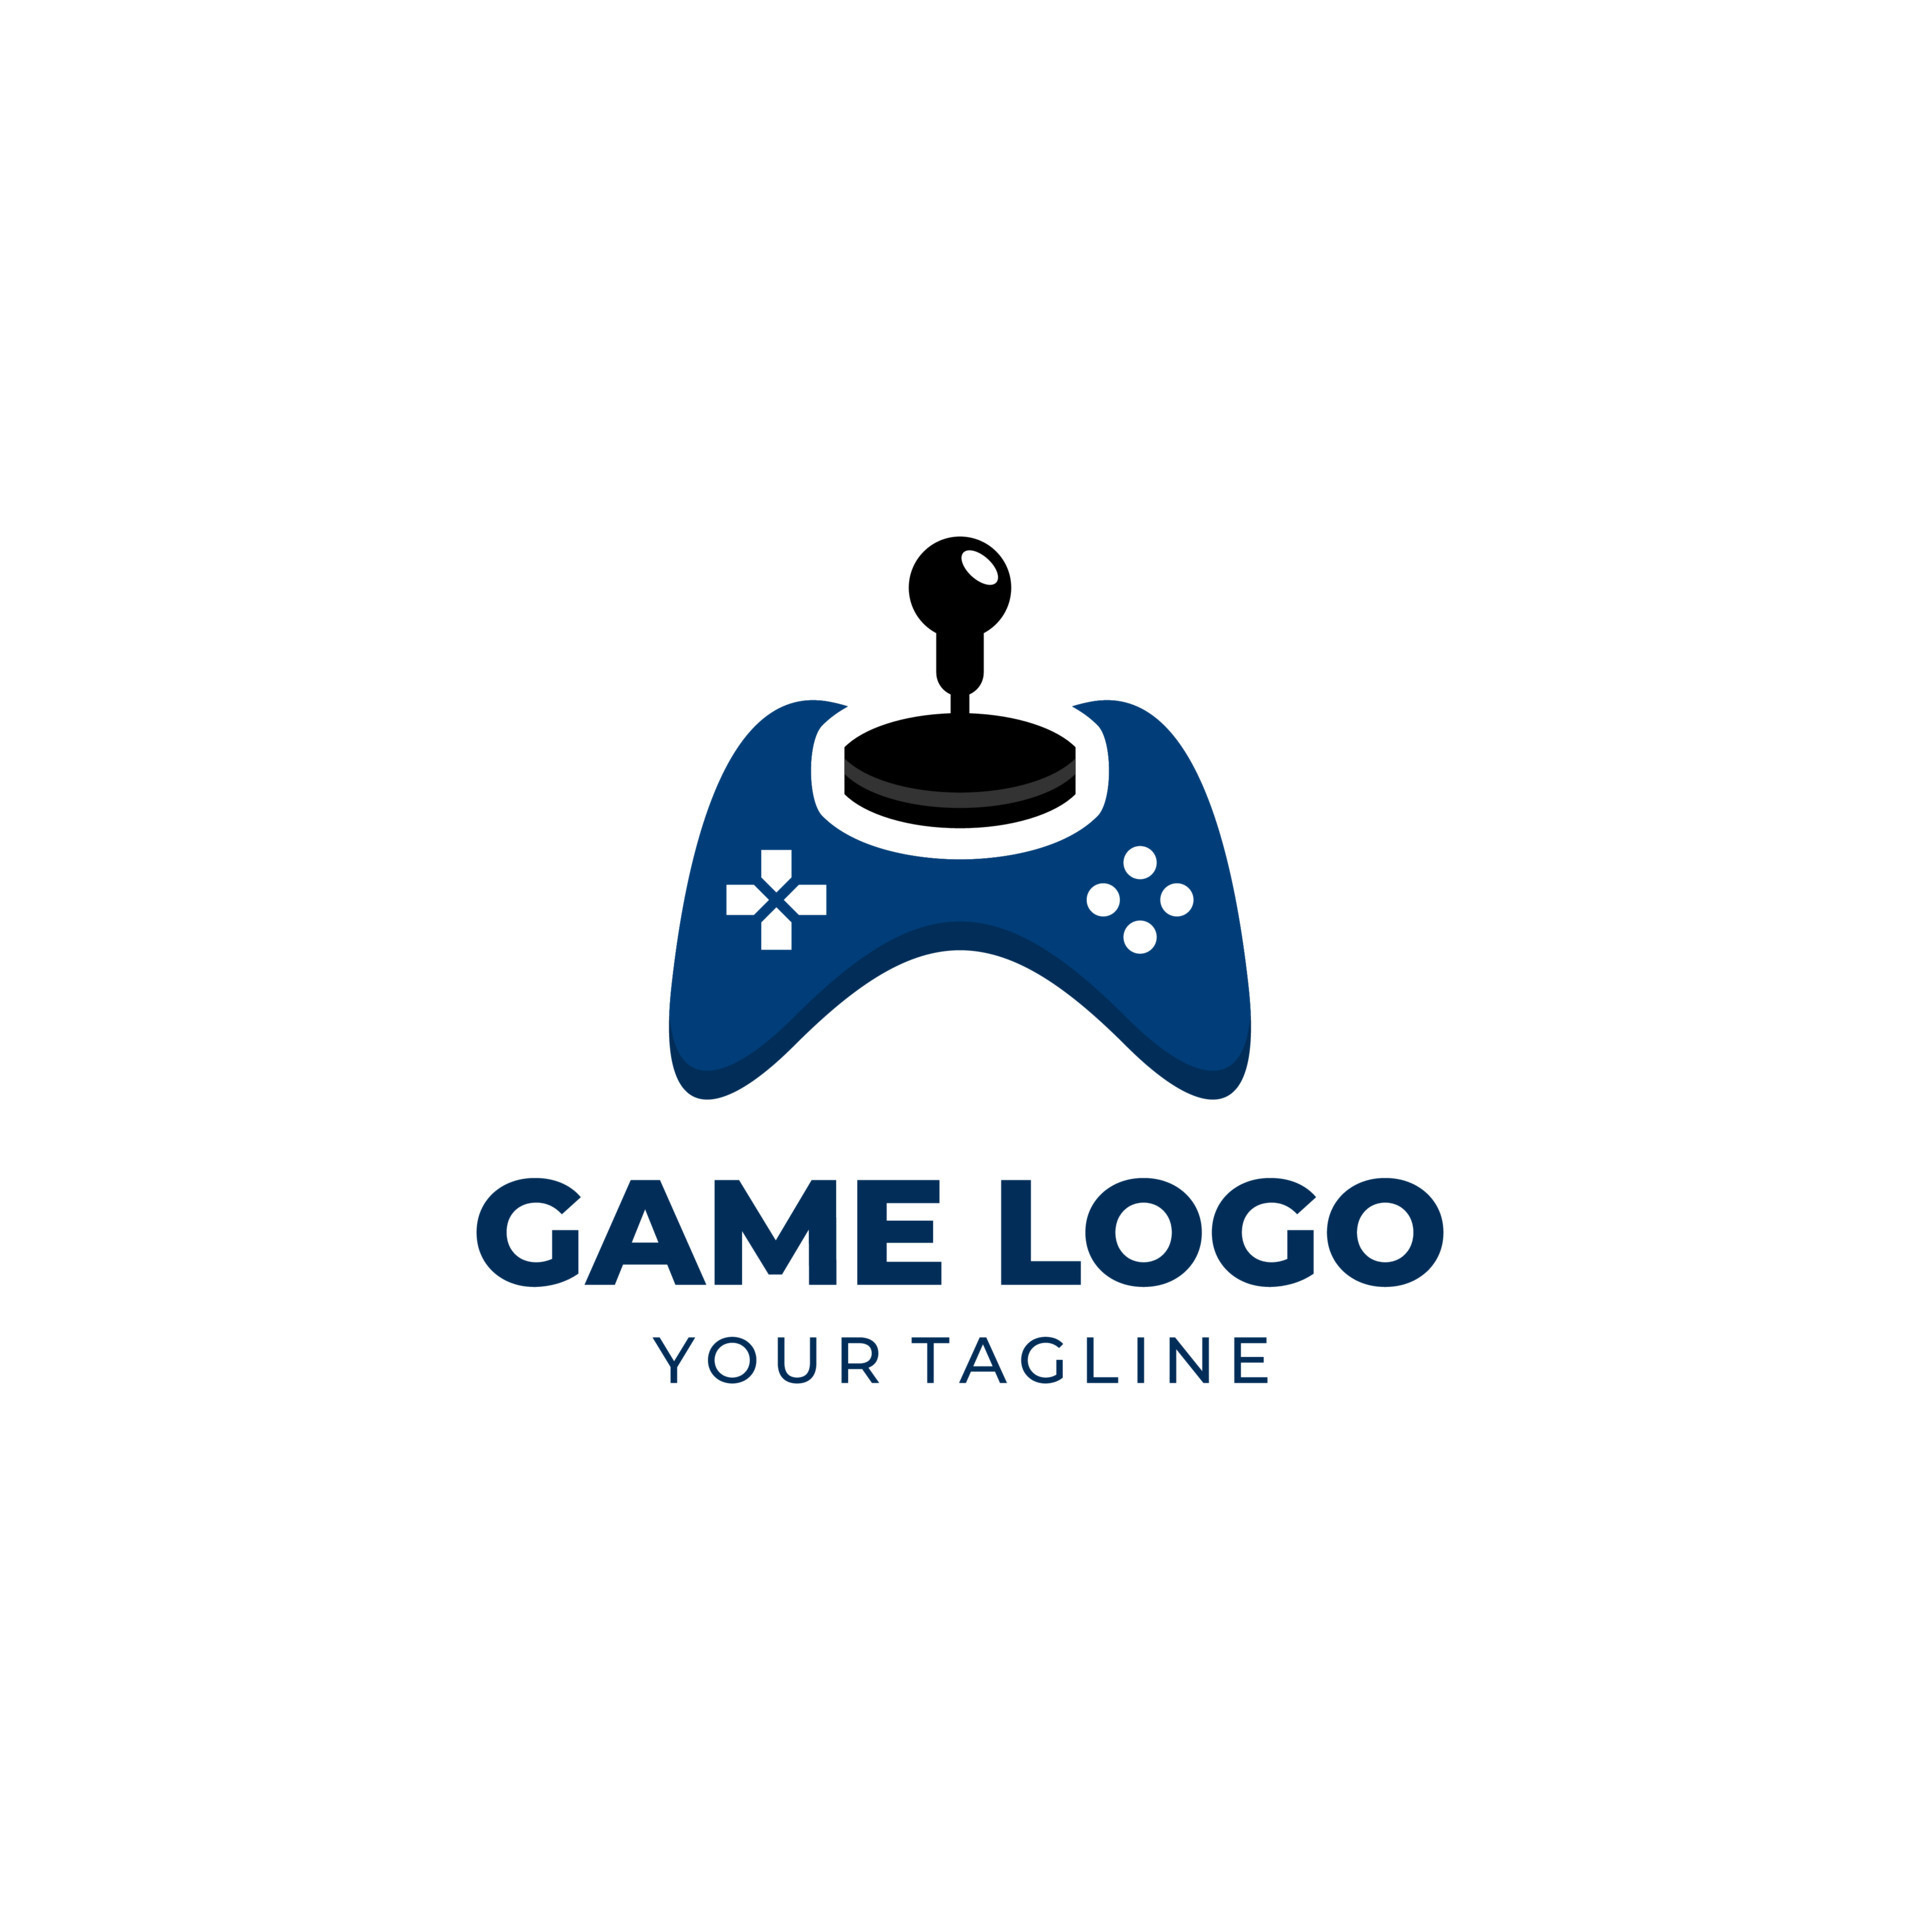 game console logos